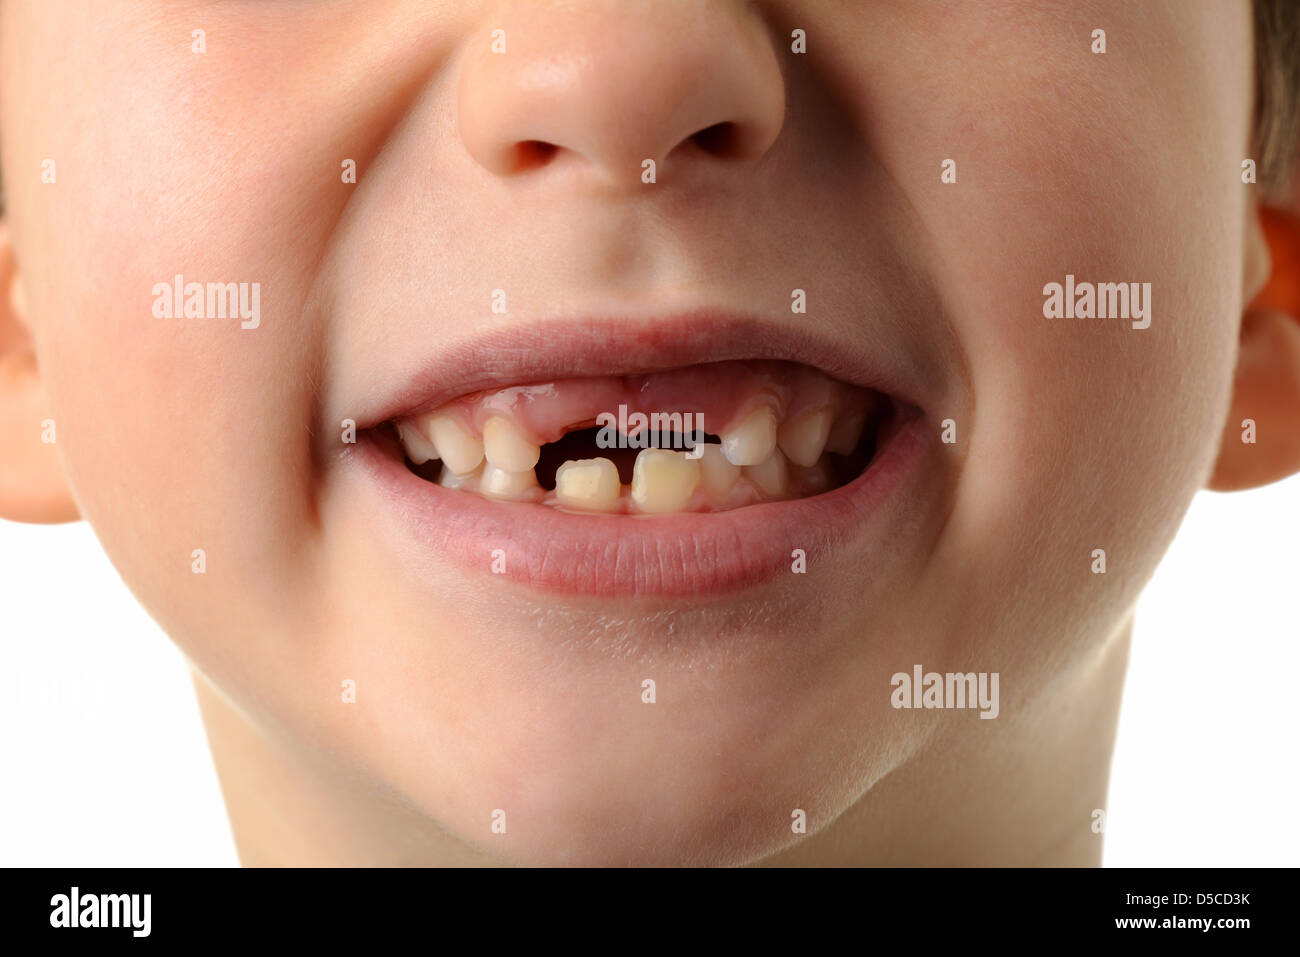 Kind vermisst seine zwei oberen Zähne, close-up der Mund des jungen zeigen seine beiden oberen Zähne fehlen. Stockfoto